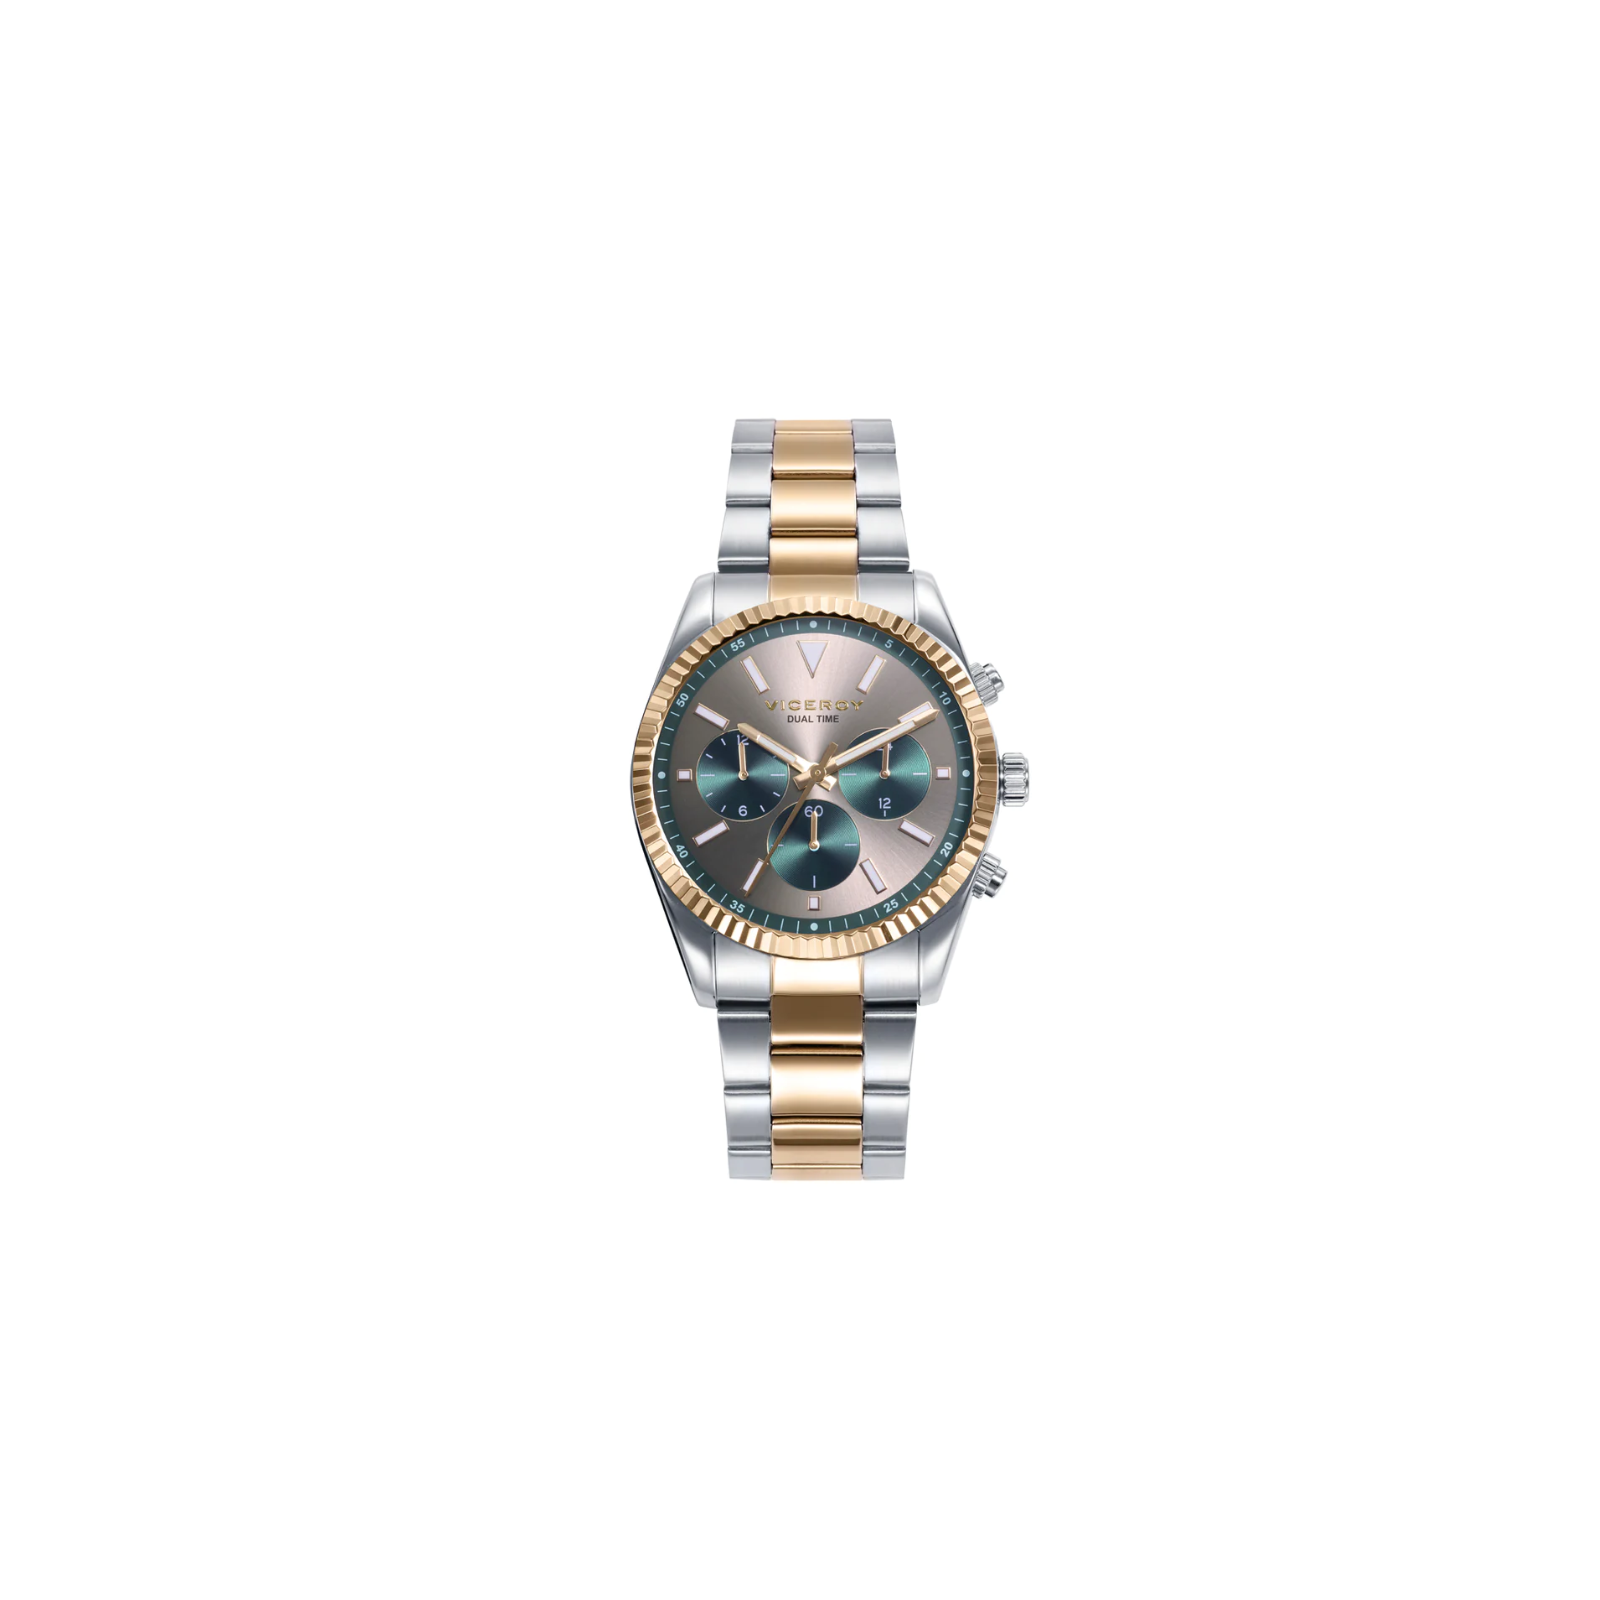 Reloj de Hombre Viceroy Chic,42439-97 — My Watches Corner